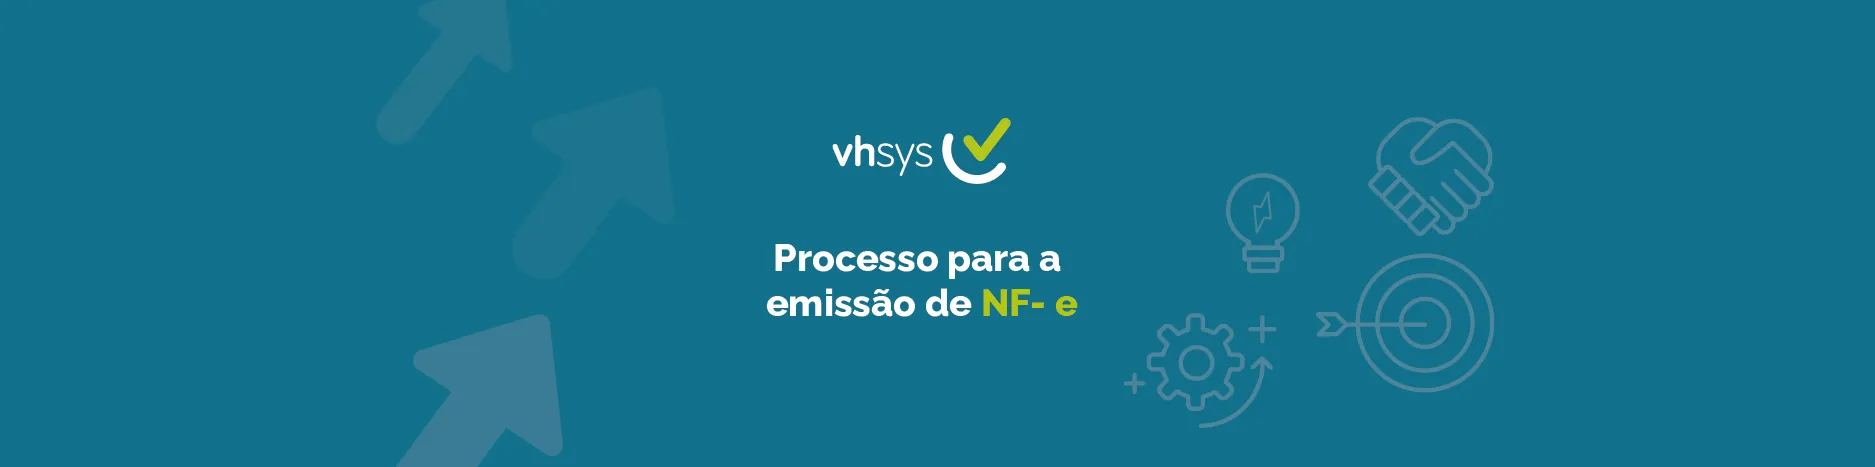 O processo para a emissão de NF- e